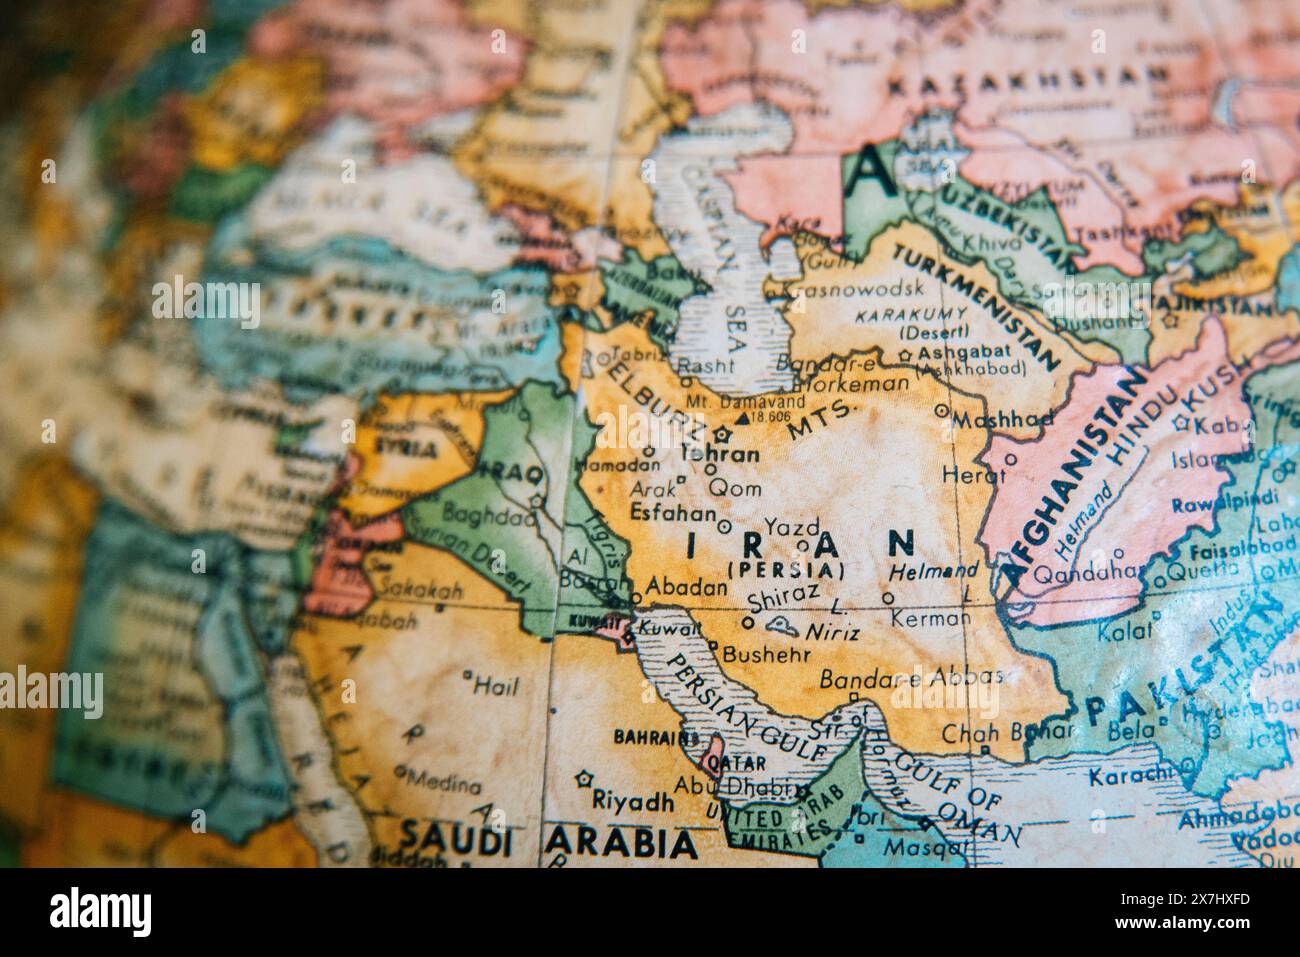 Eine detaillierte Vintage-Weltkarte, die den Nahen Osten, einschließlich Iran, Irak, Afghanistan und umliegenden Regionen, beleuchtet. Schwerpunkt auf Iran. Stockfoto